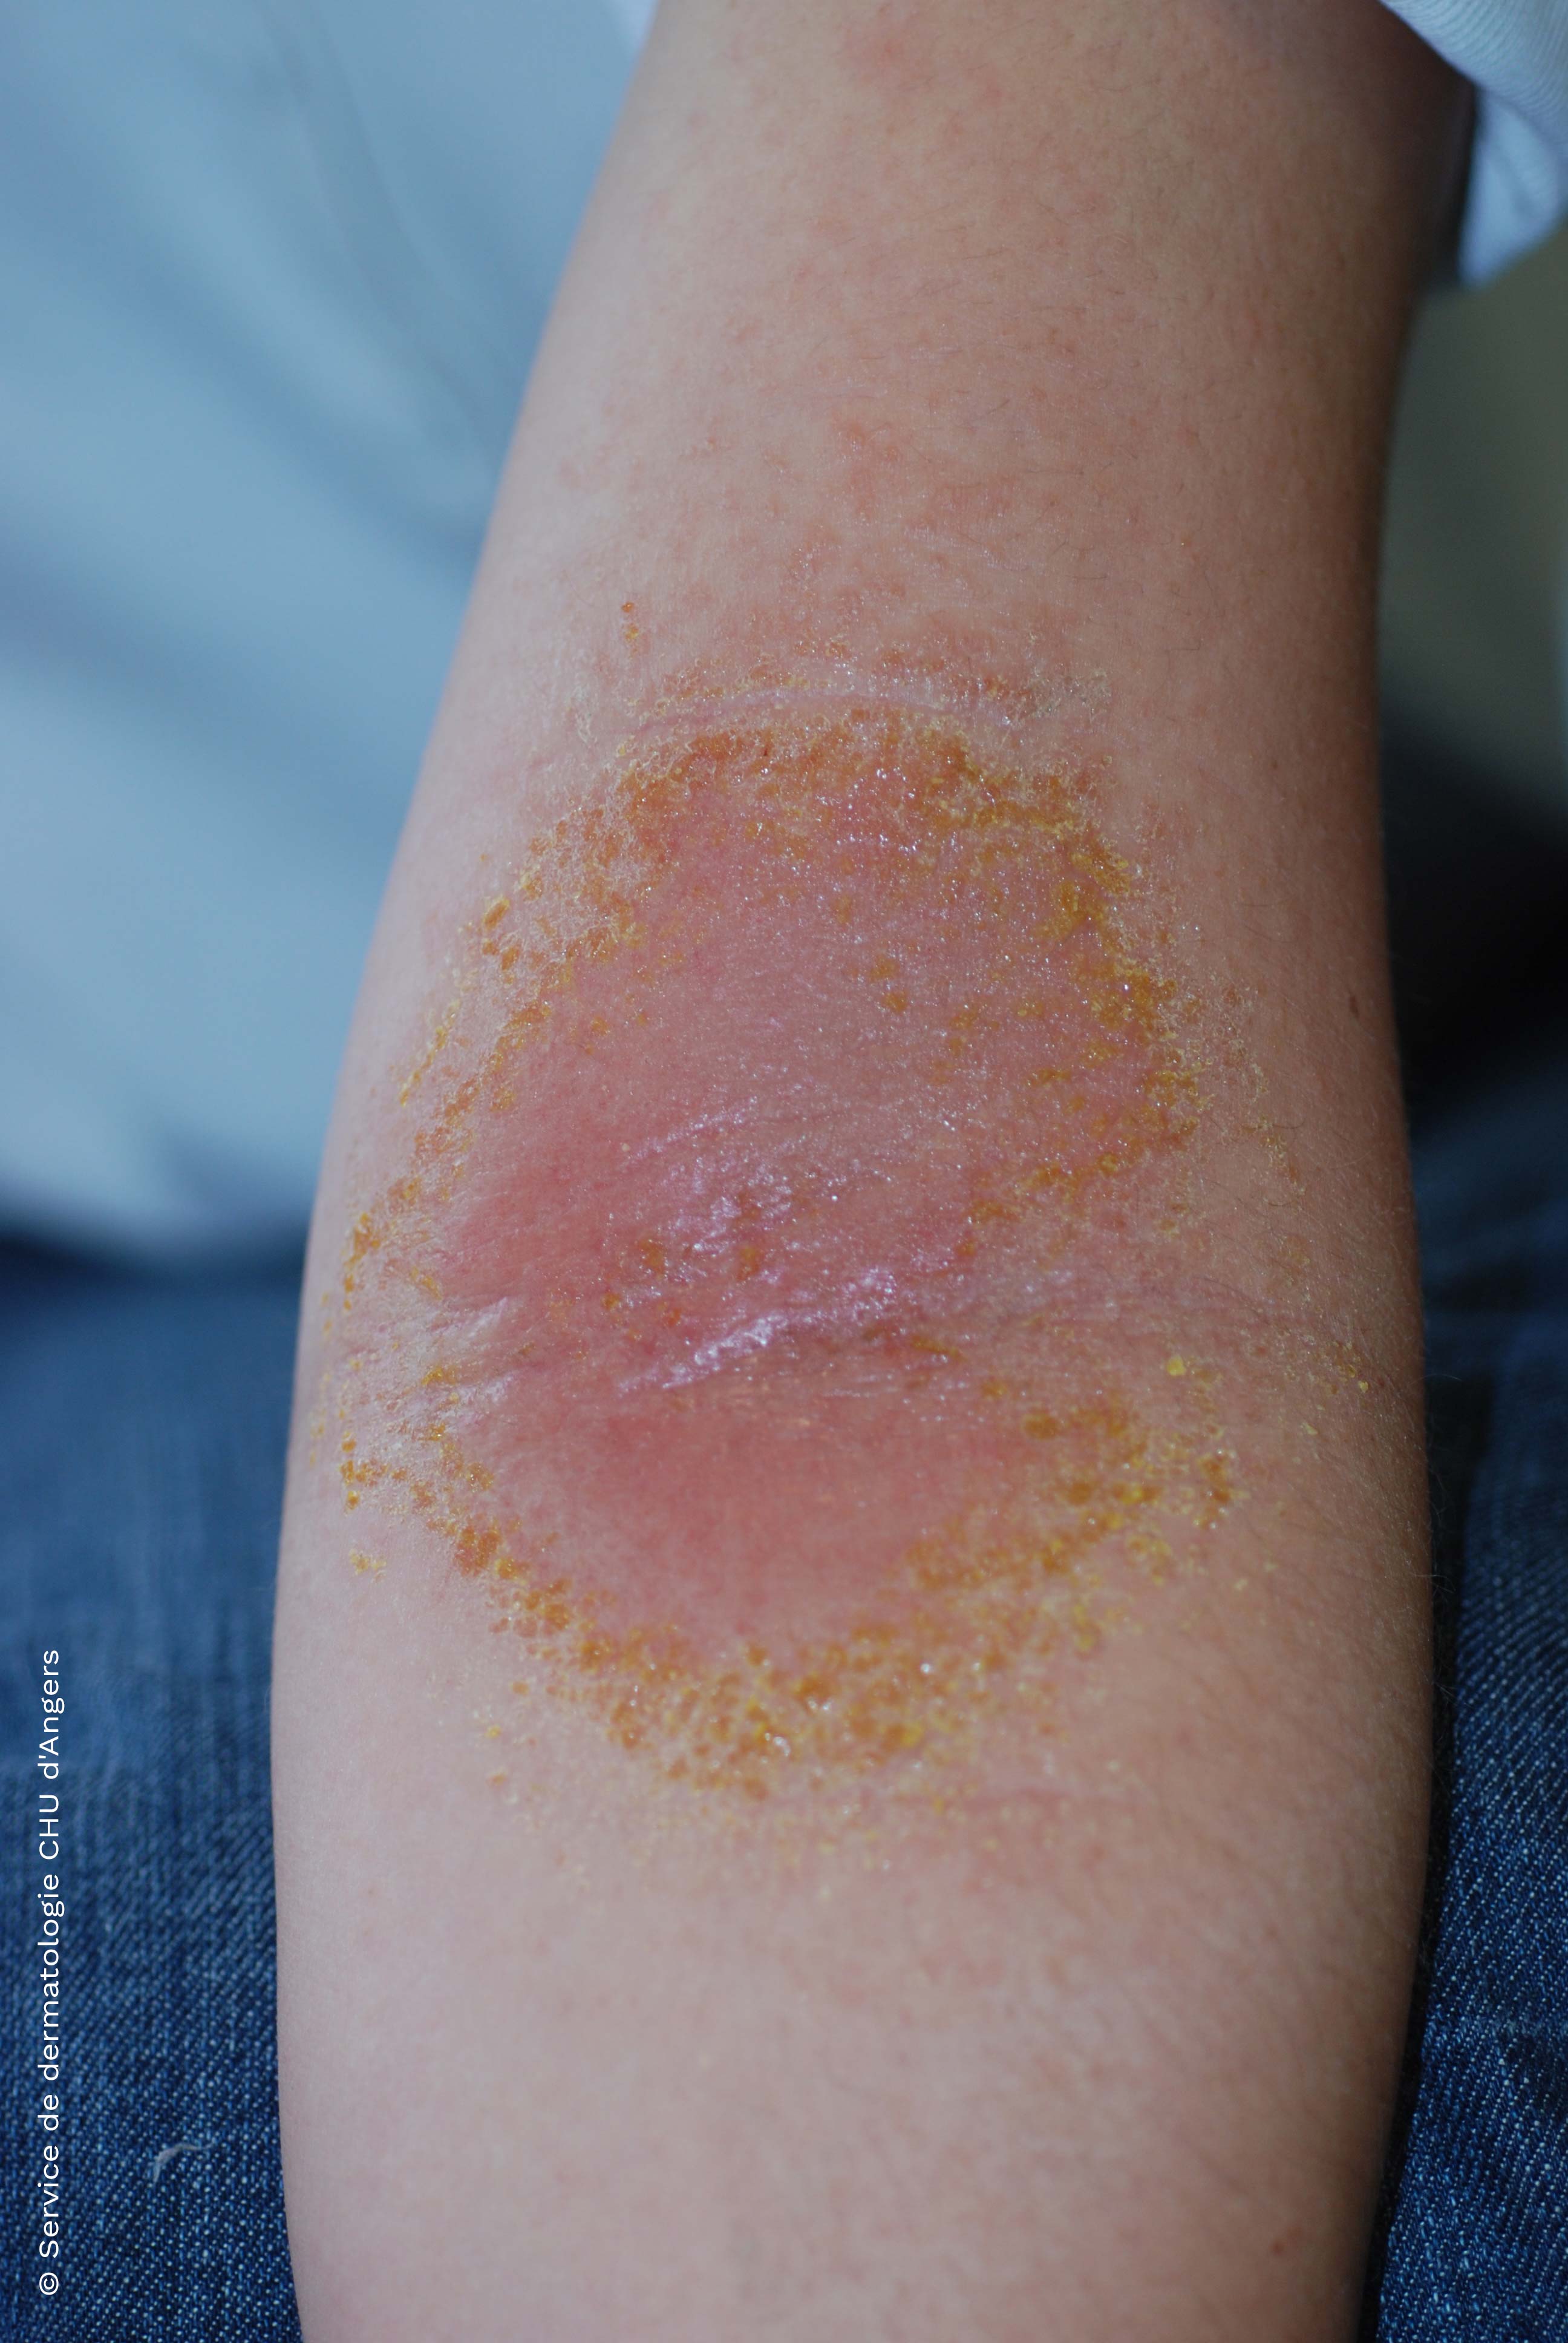 L'eczema allergico da contatto del braccio